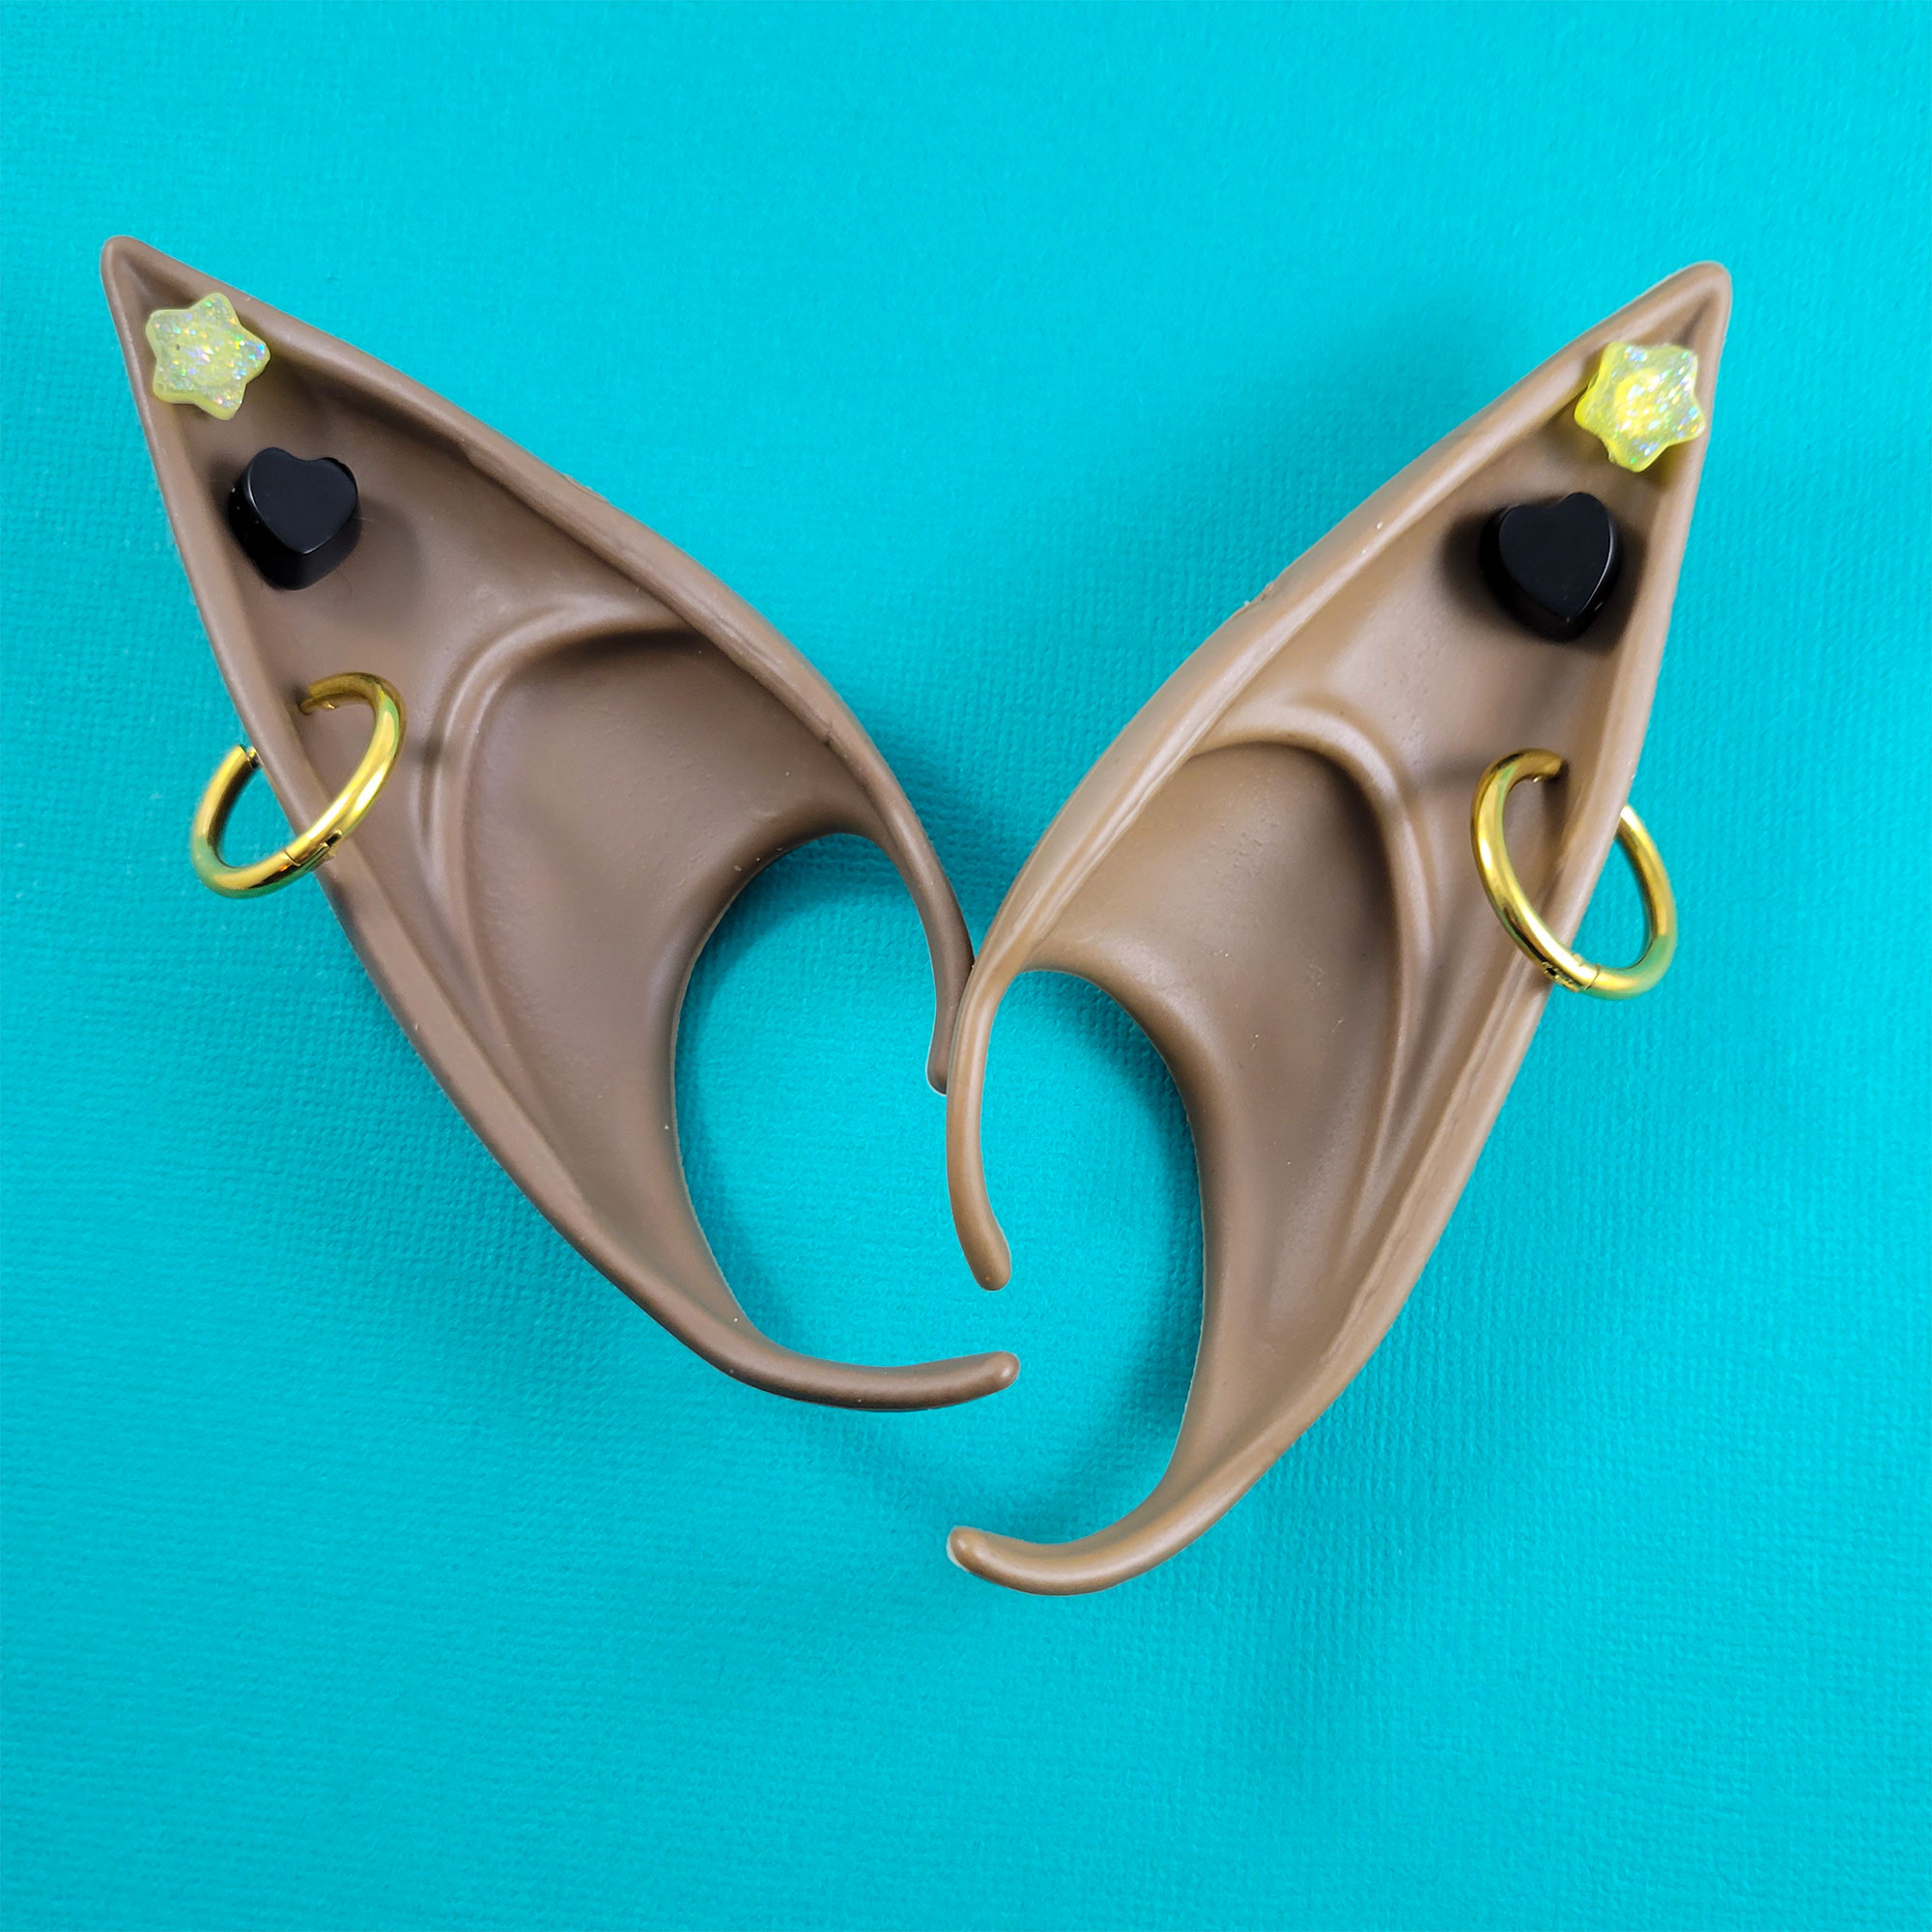 Brown Elf Ears with Yellow & Black Earrings by Wilde Designs